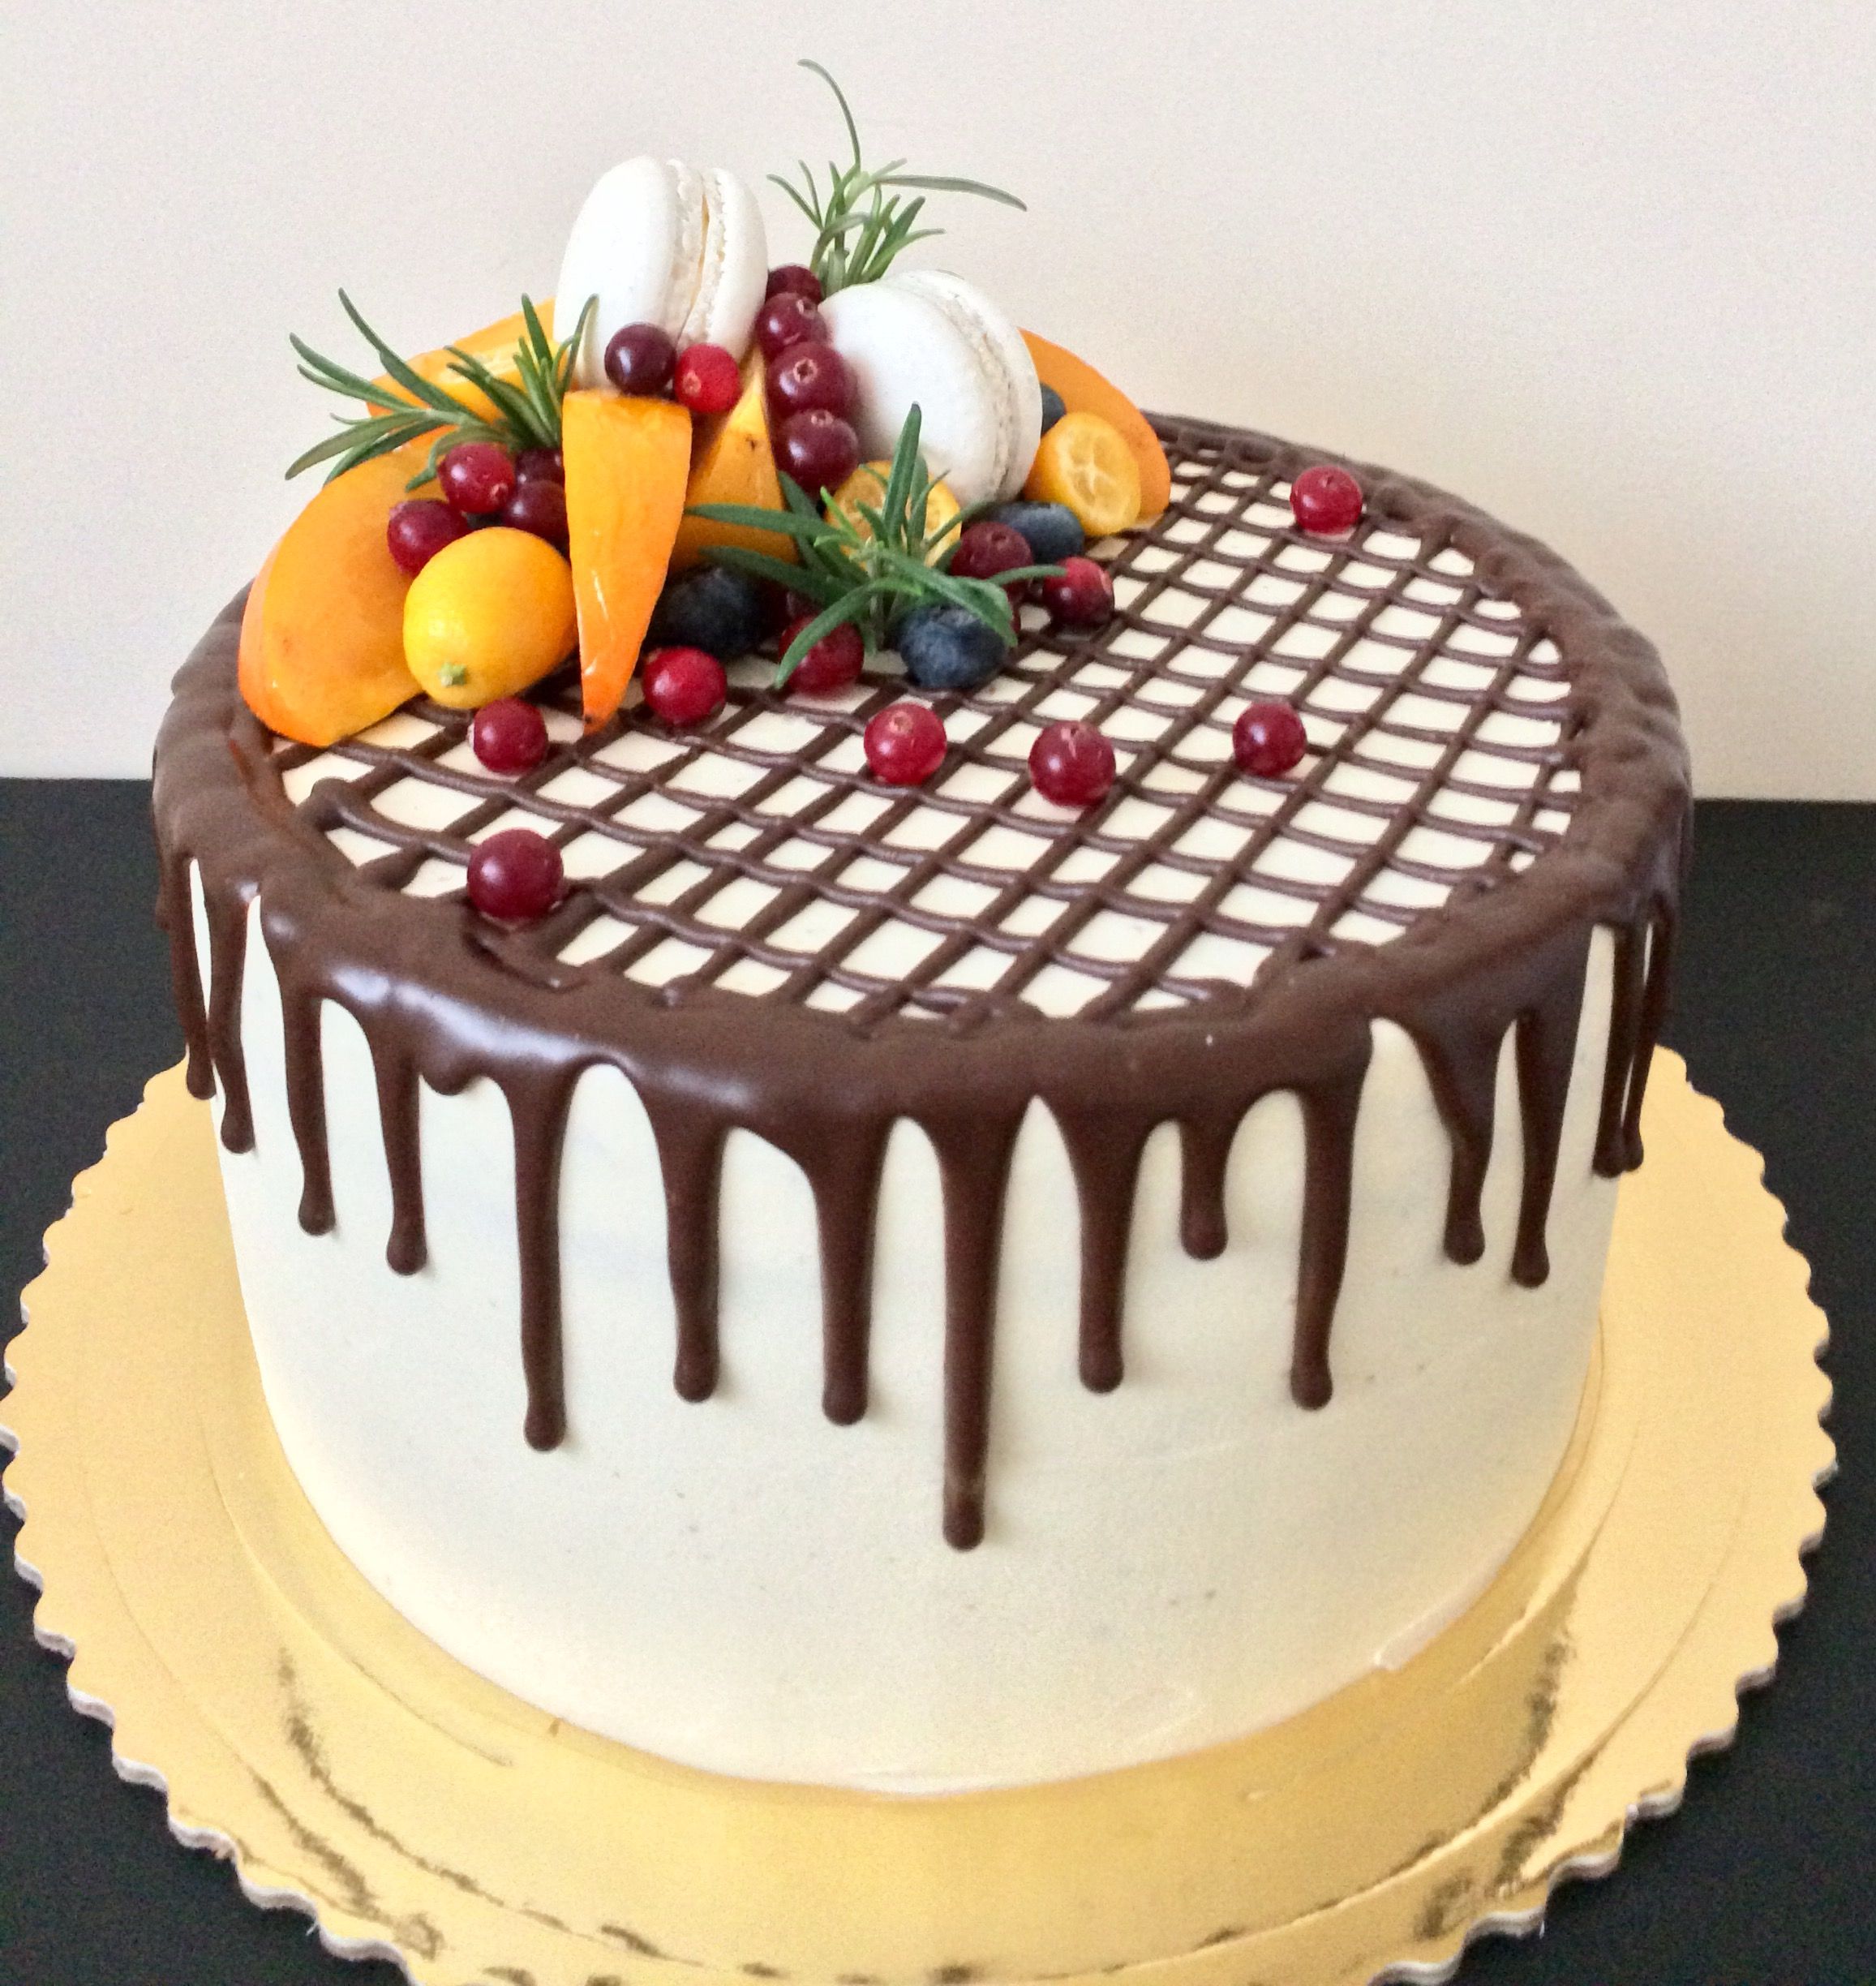 Украсить торт самим как: Как просто украсить торт: 3 простых идеи декора торта - с ягодами сверху, украшение шоколадного торта и другие